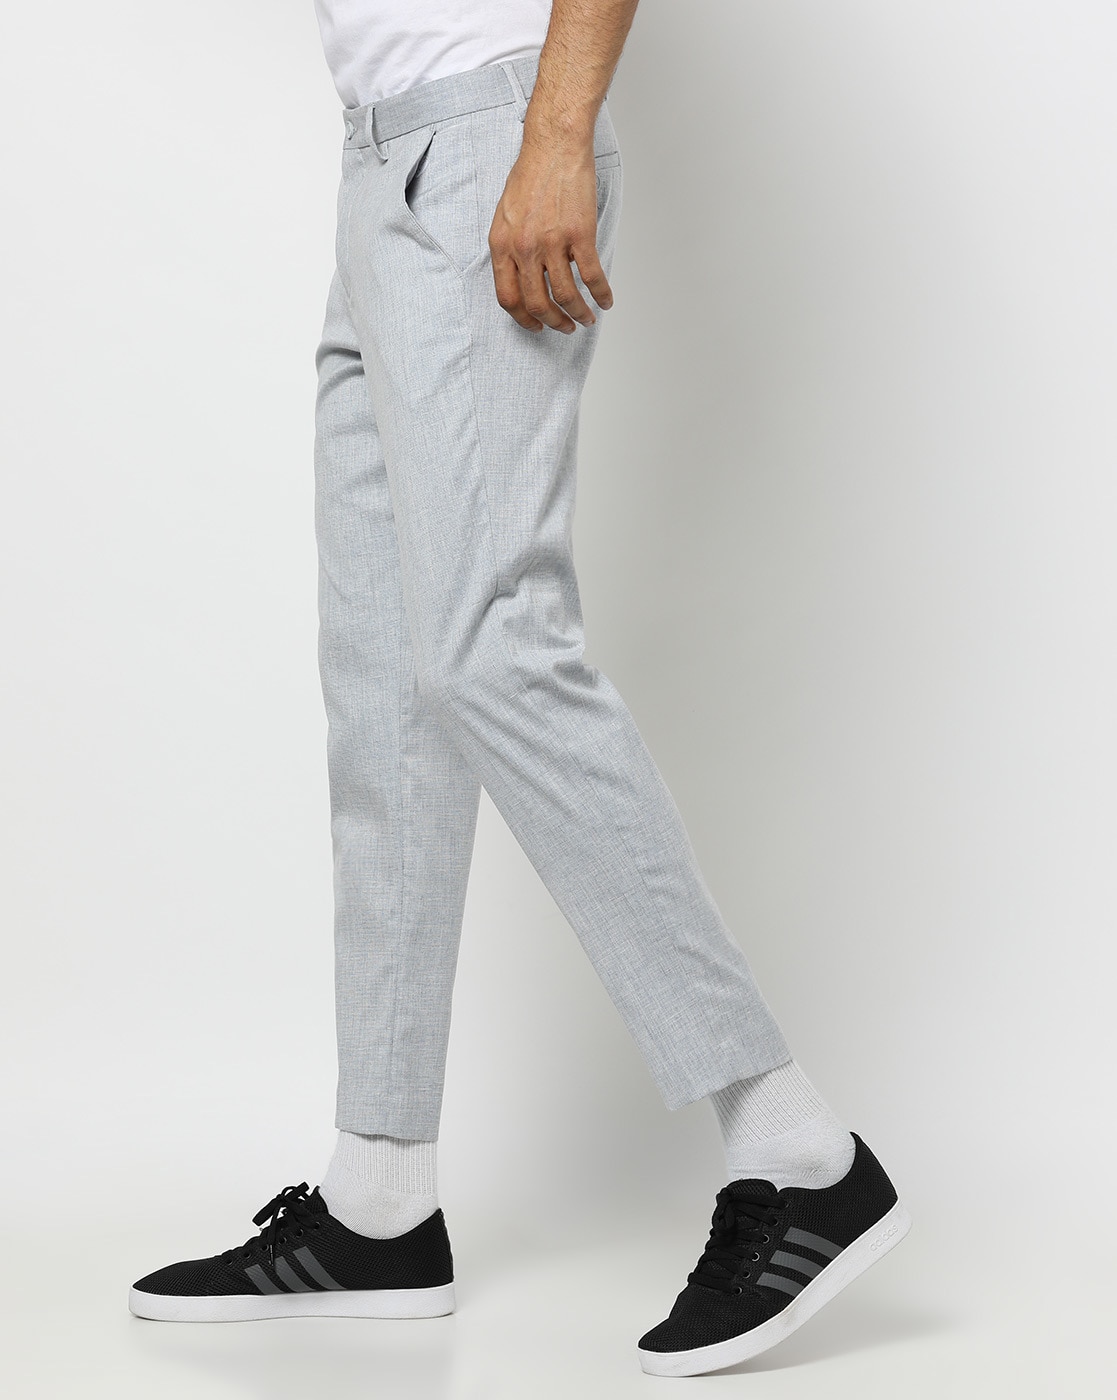 Plaid Pants Men Cotton Slim Fit Straight Trousers Elasticity Stretch  Classic Dress Pants Suit Business Casual Long Male Pants | Chittili